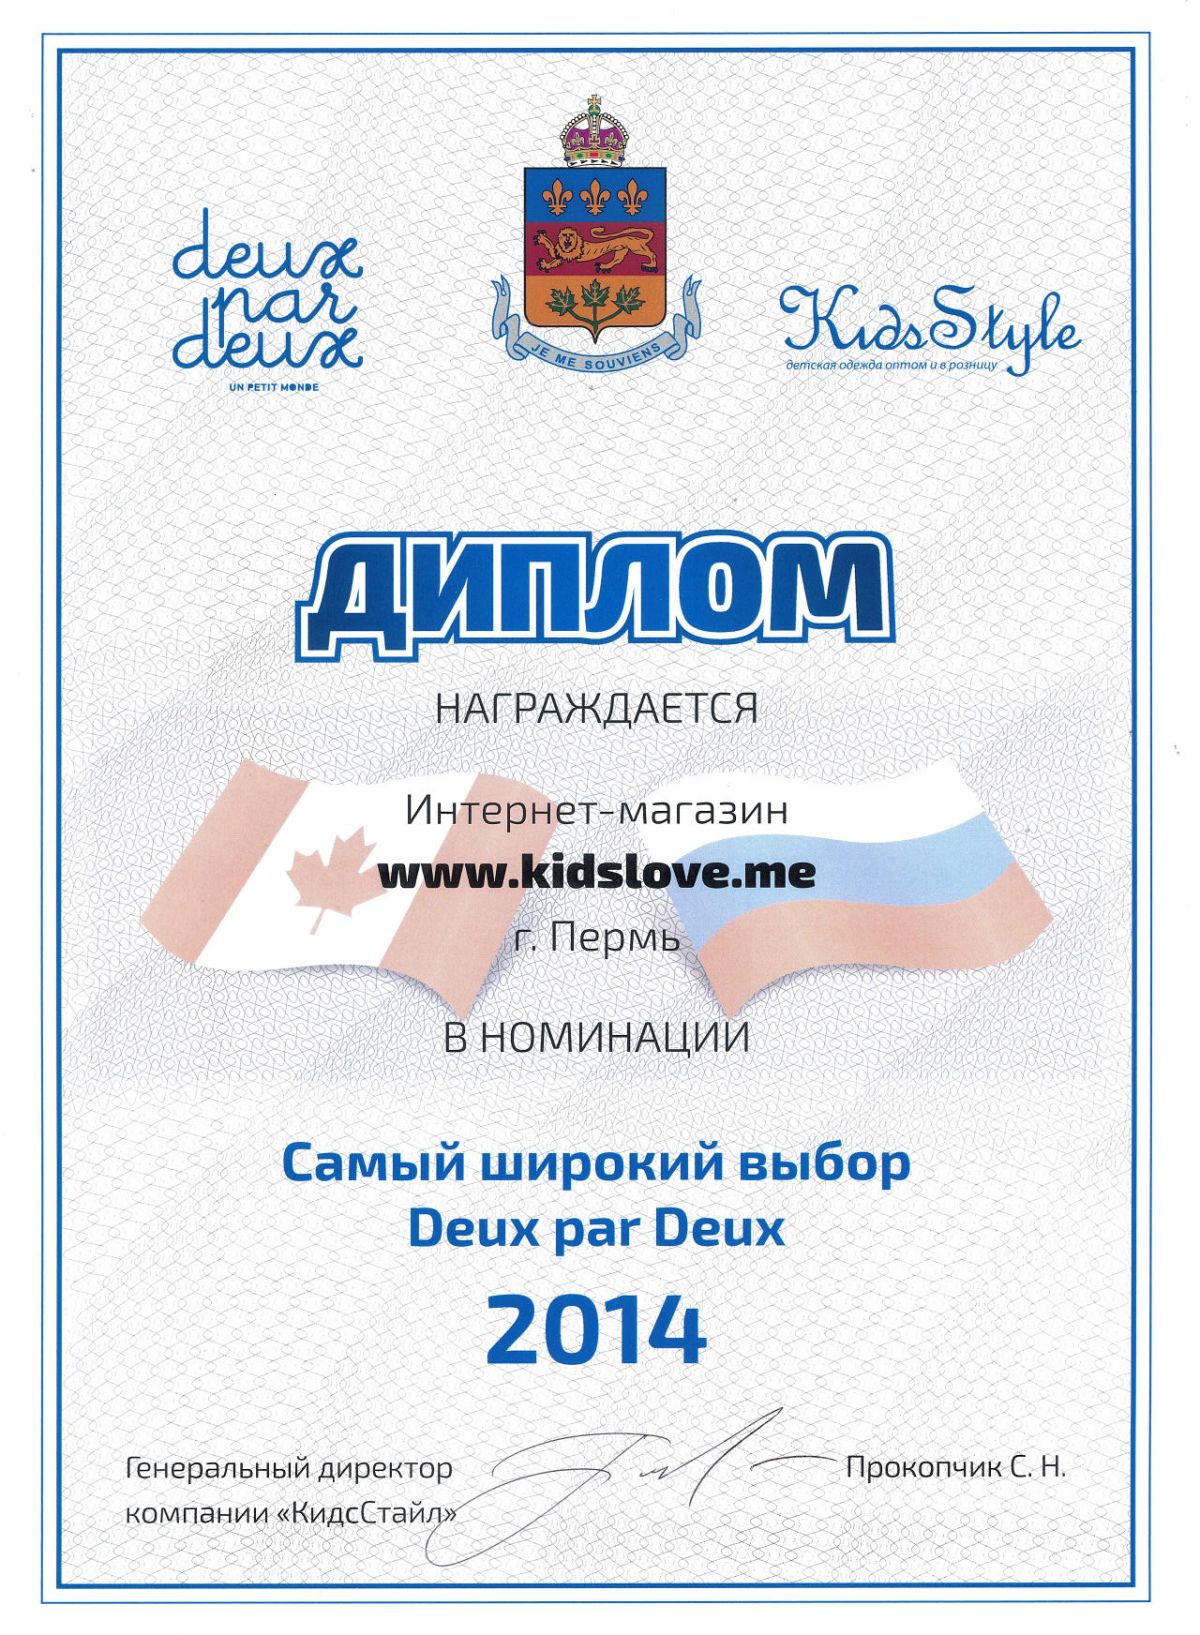 Kidslove.me стал обладателем титула «Самый широкий выбор Deux par Deux в России»